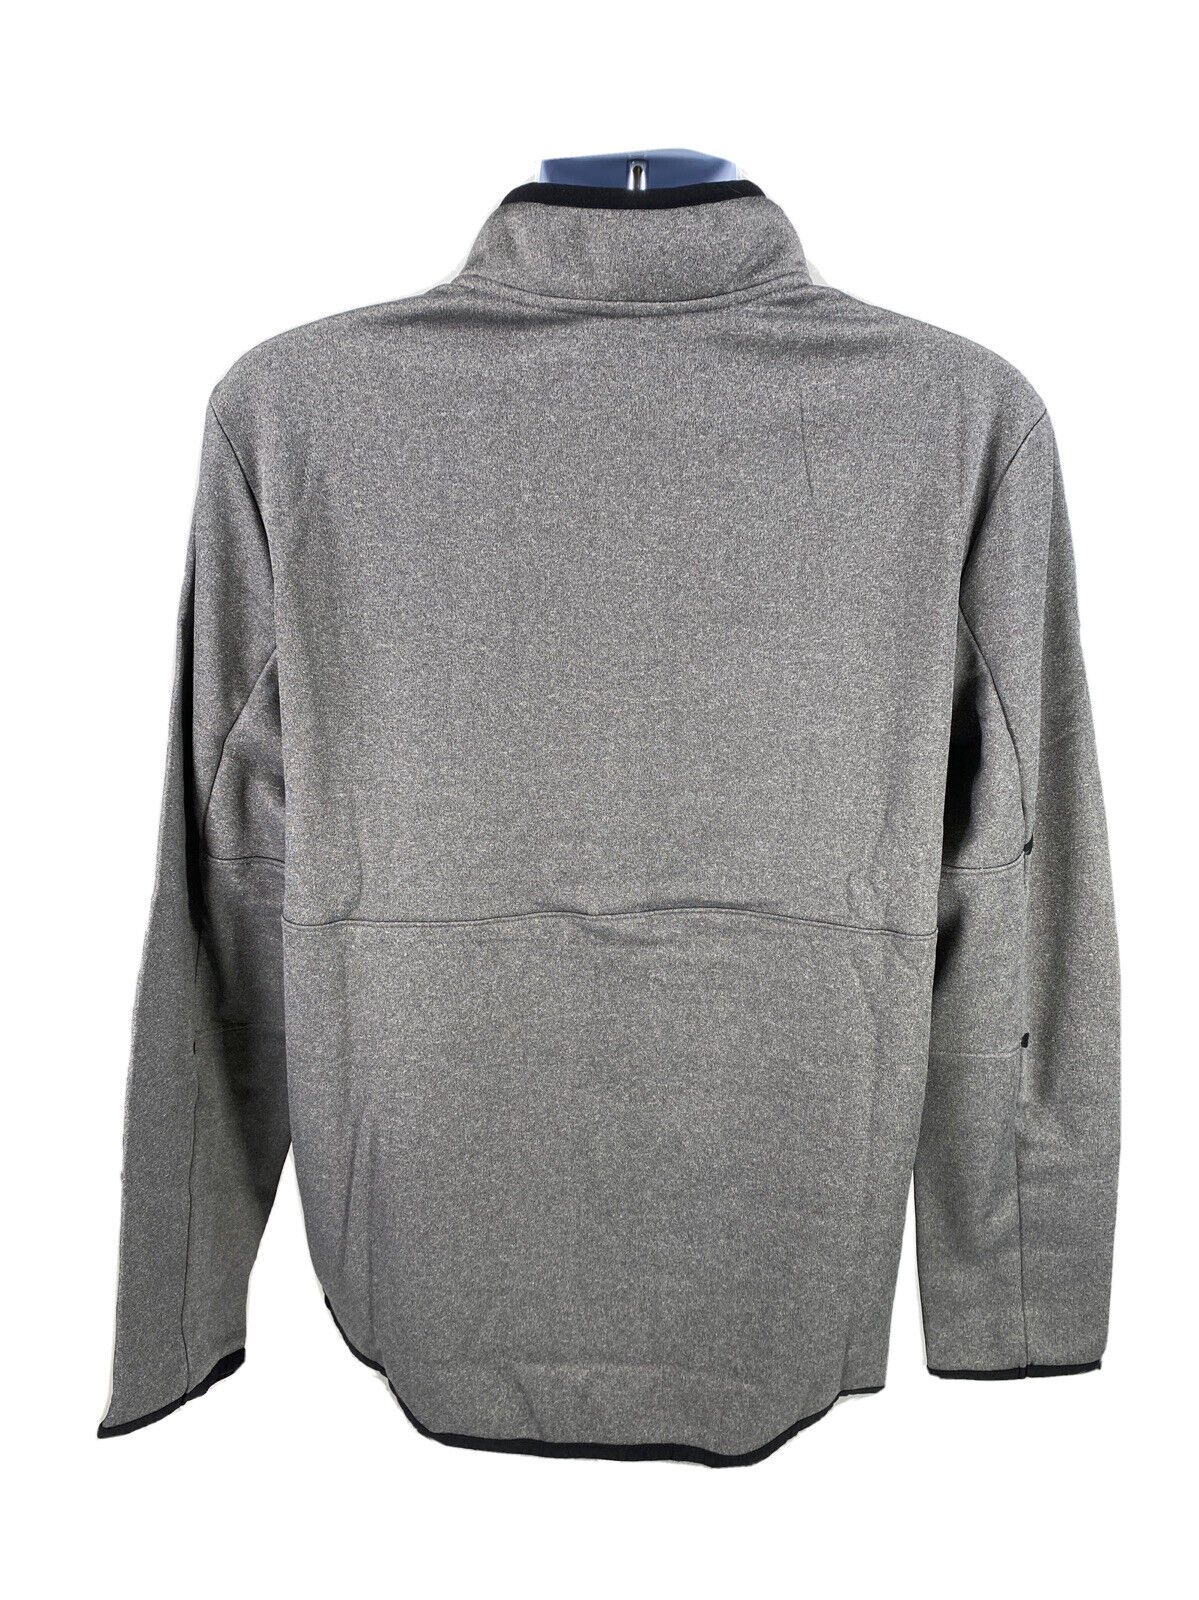 NUEVA sudadera tipo jersey con cremallera de 1/4 y forro polar gris de Tek Gear para hombre, talla M